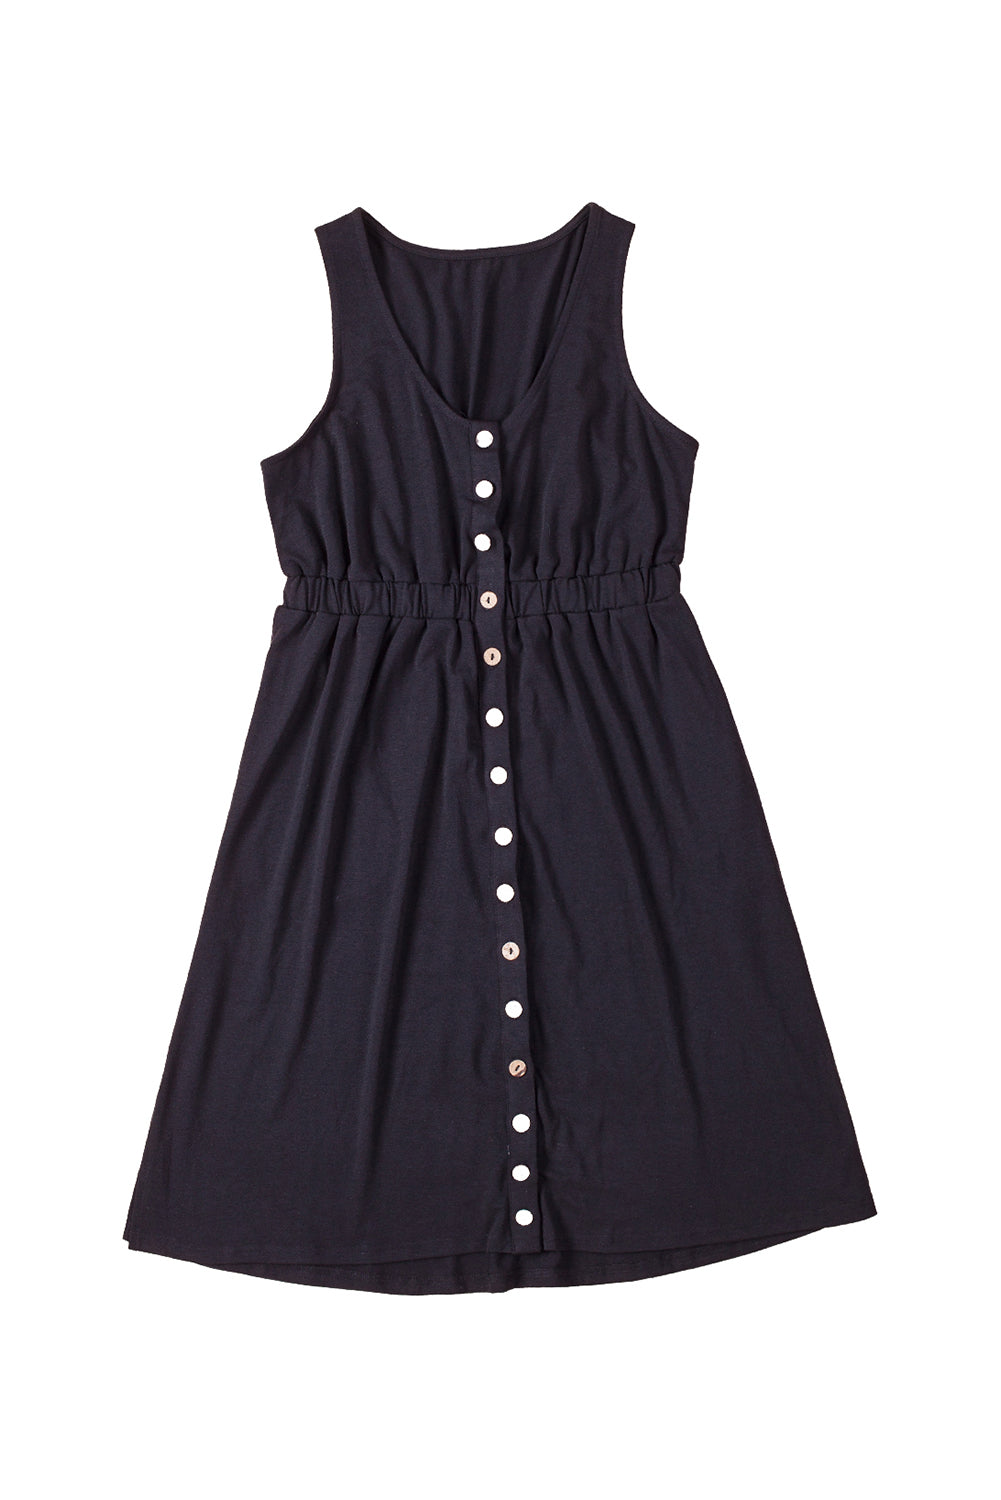 Sleeveless Button Front Short Basics Dress